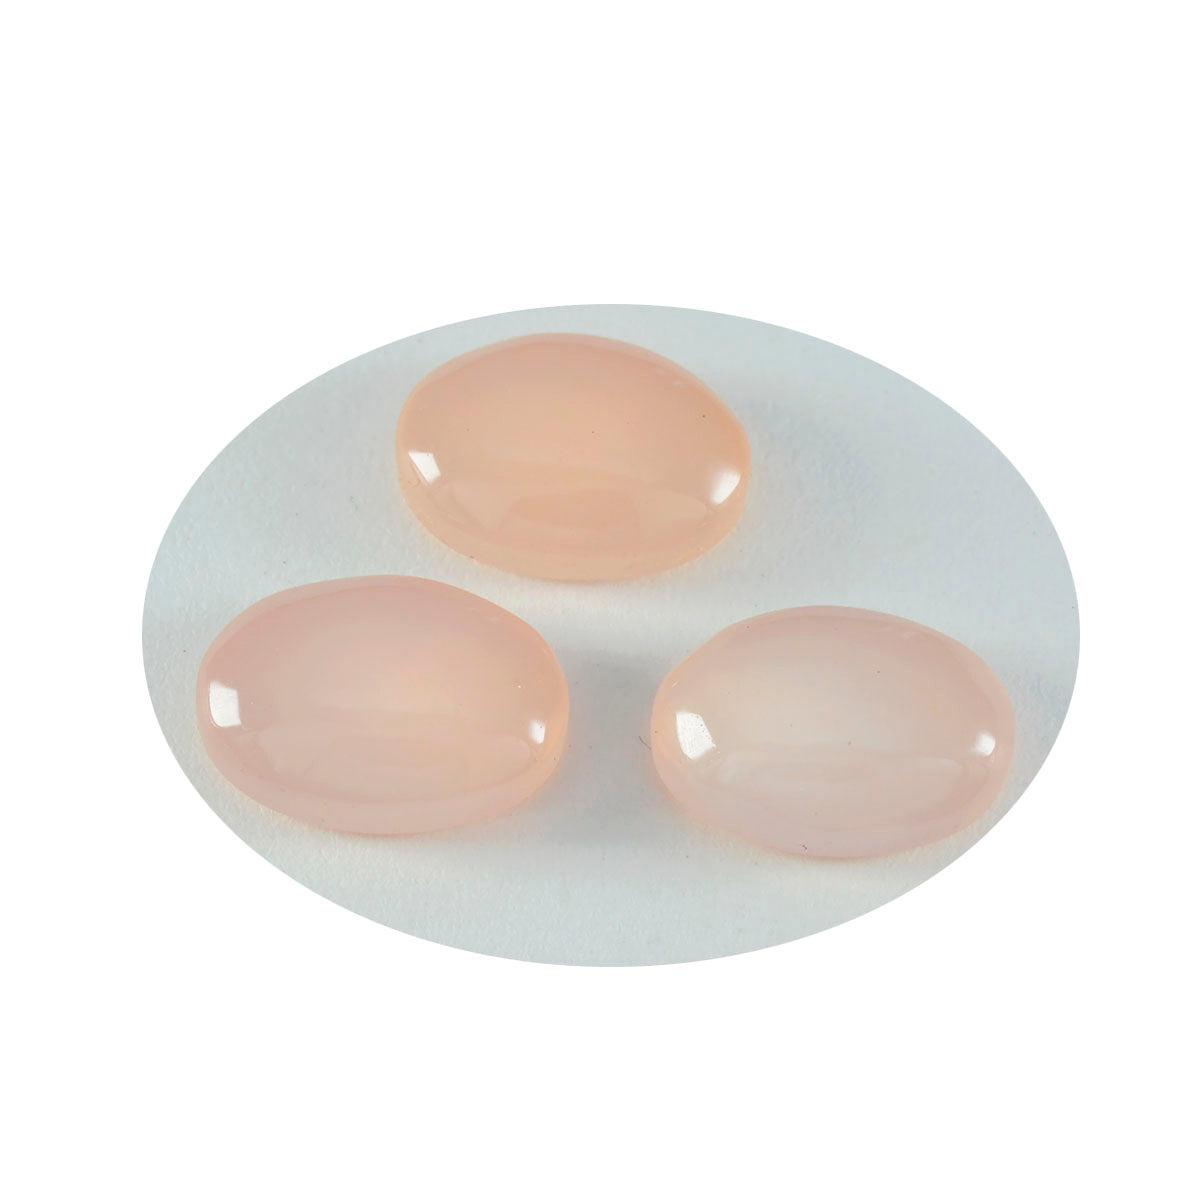 Riyogems 1PC roze rozenkwarts cabochon 10x12 mm ovale vorm verrassende kwaliteit edelsteen